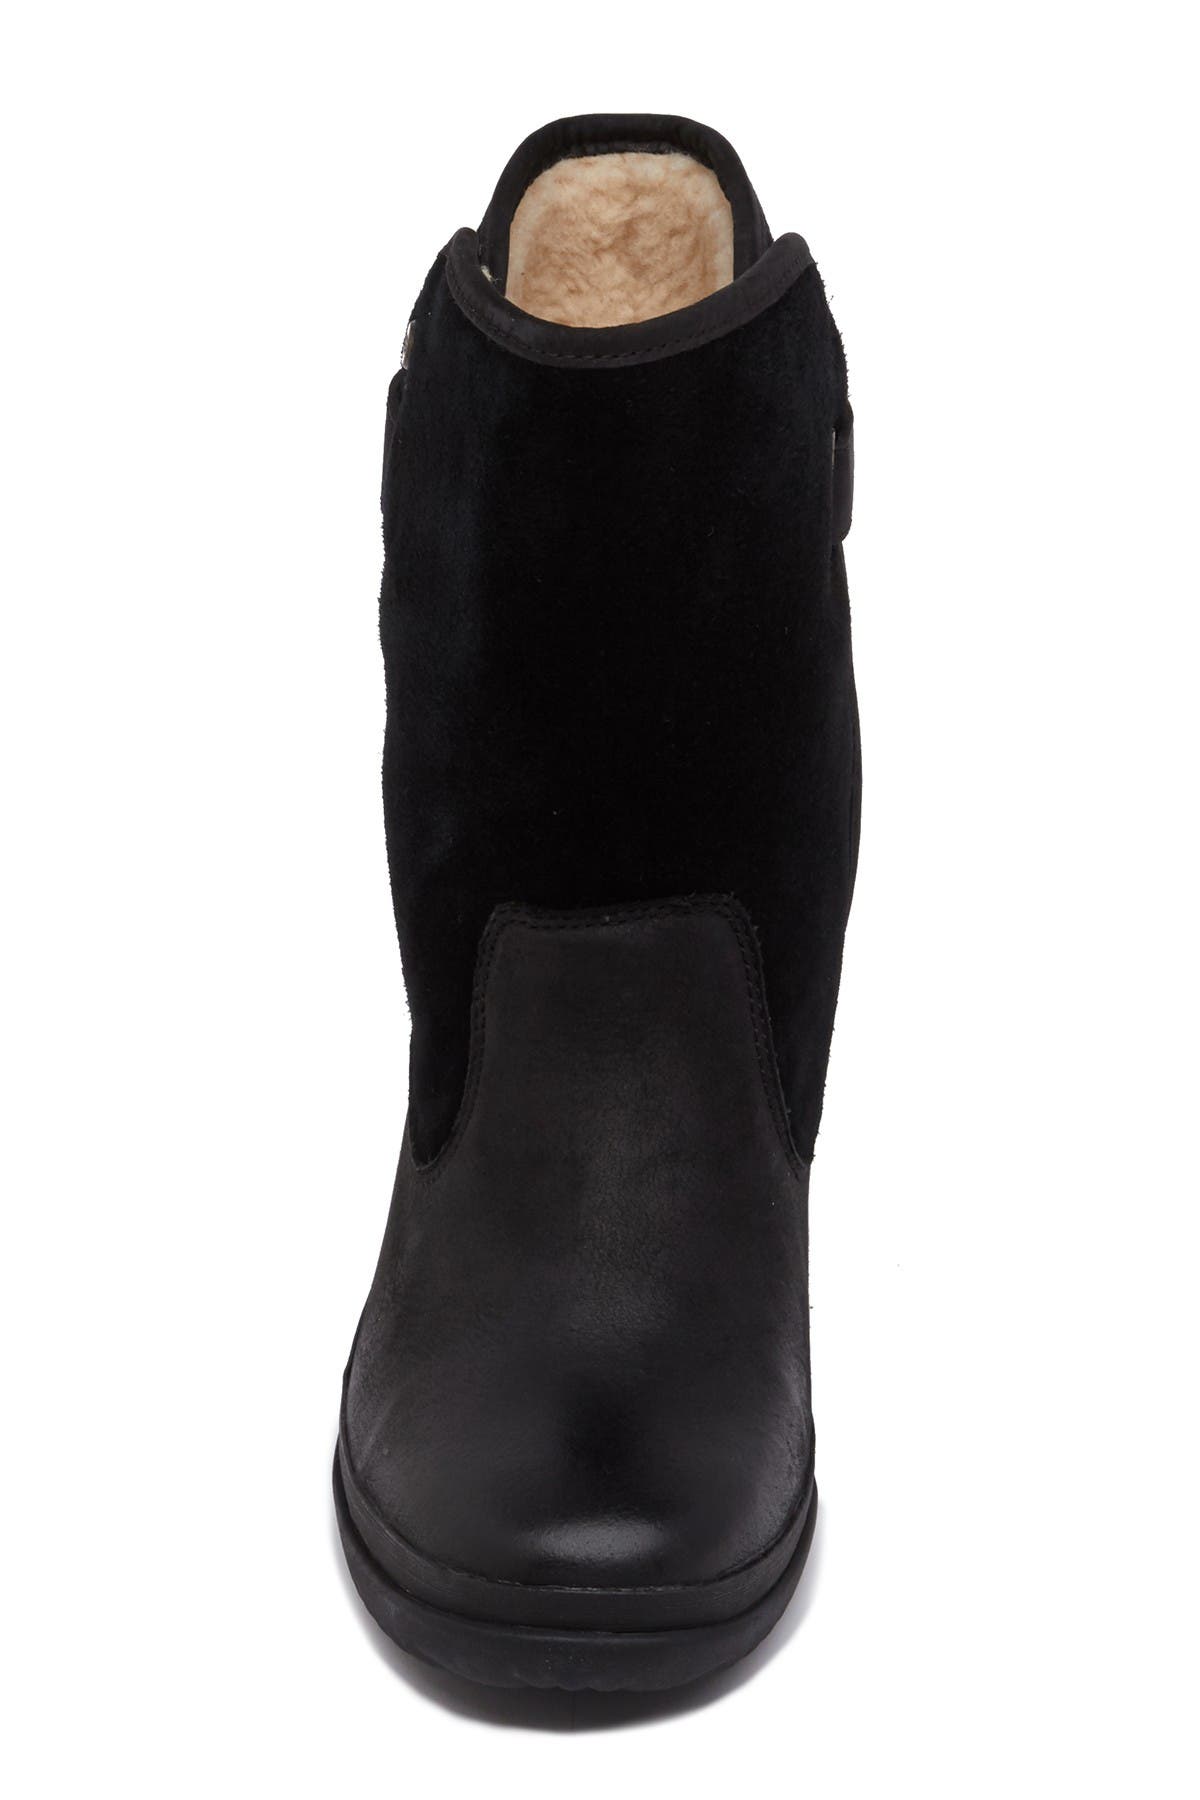 ugg women's oren fashion boot